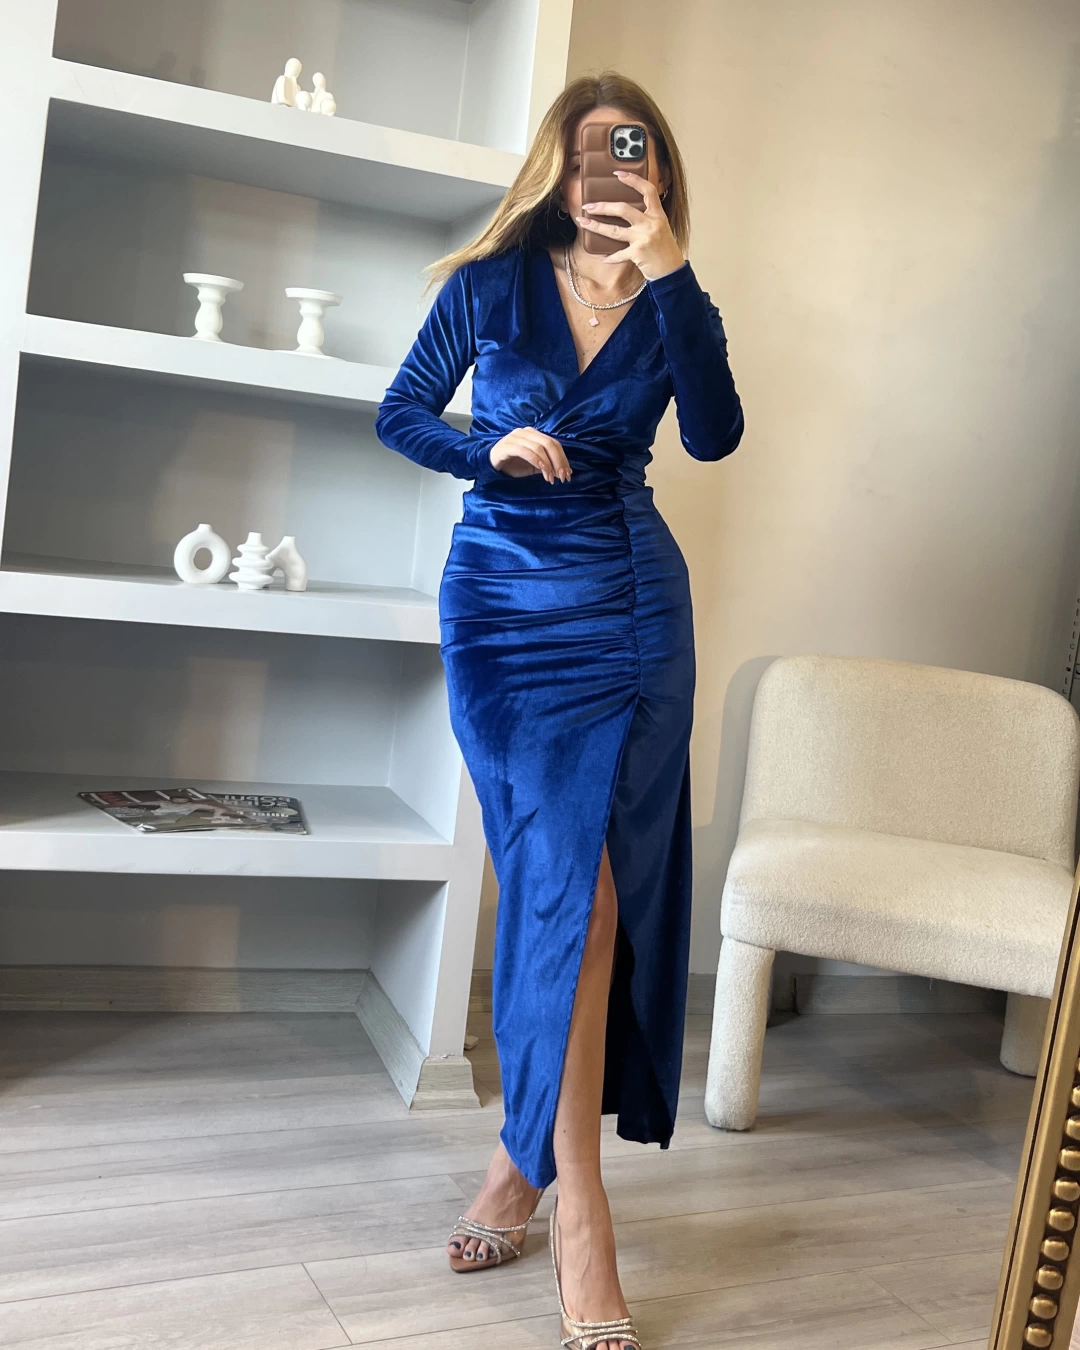 Saks Mavi Drapeli Yırtmaç Detaylı Kadife Elbise